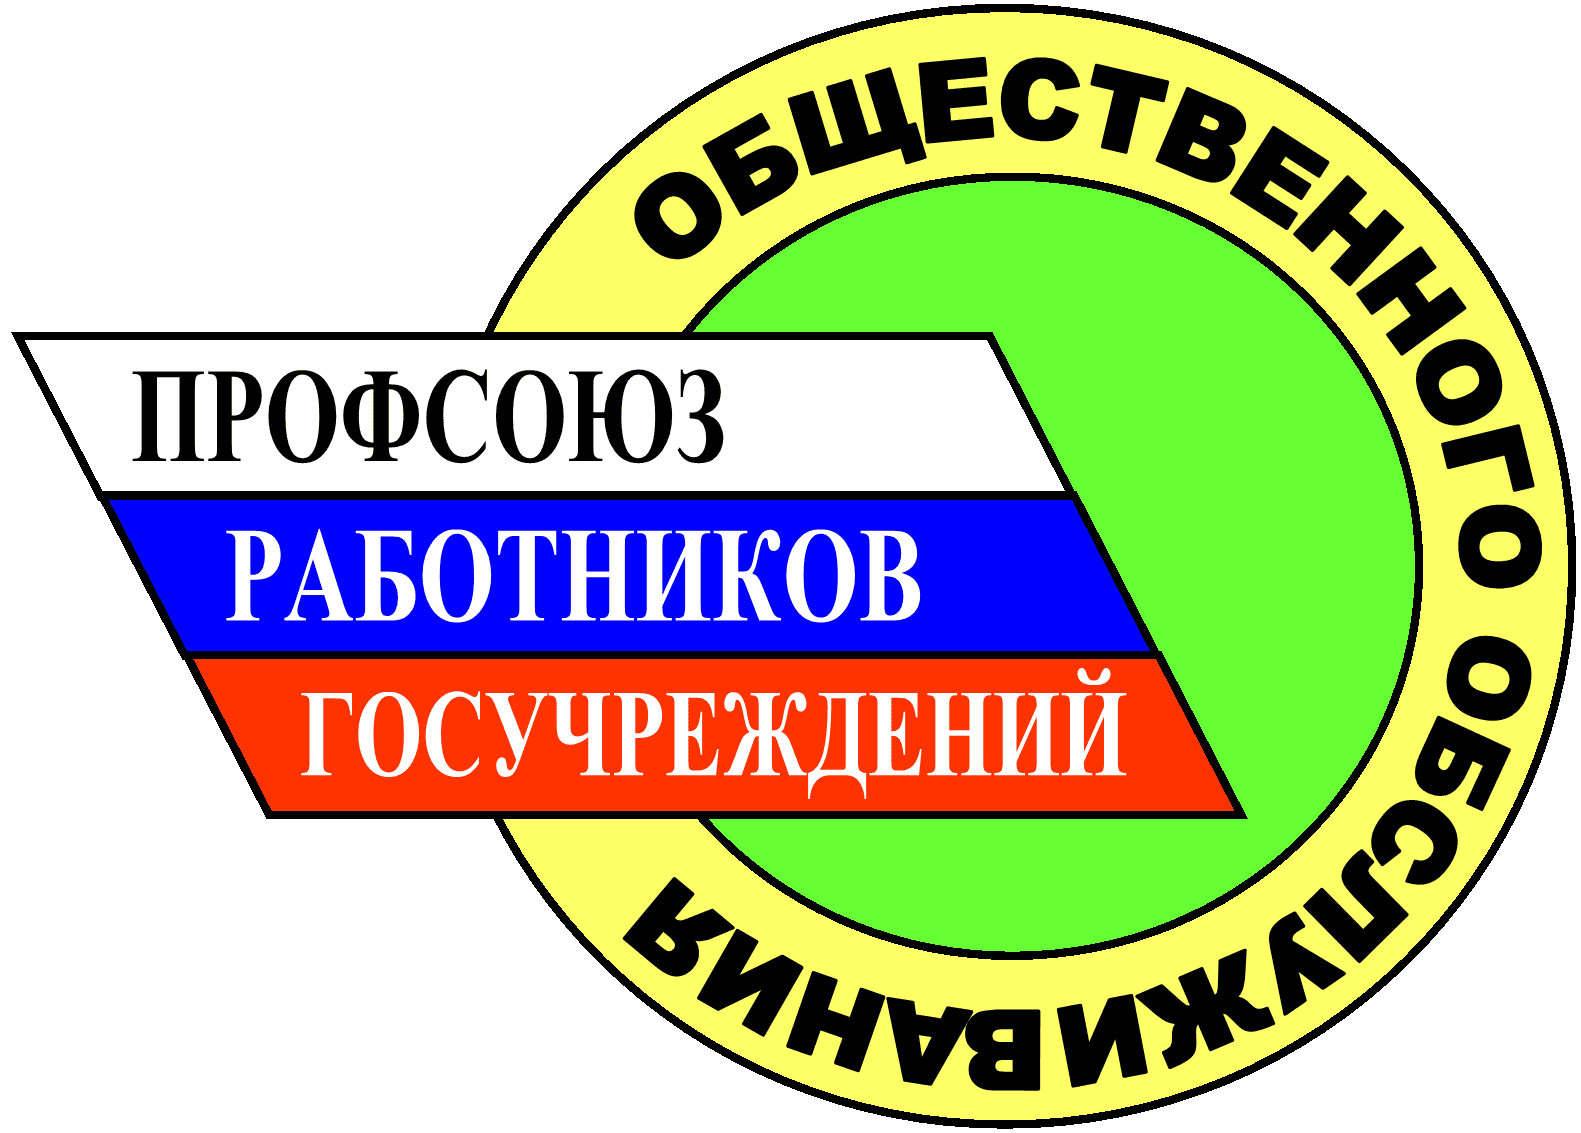 Профсоюз. Значок профсоюза. Профсоюз работников. Логотип профсоюзной организации. Профсоюзные организации в россии